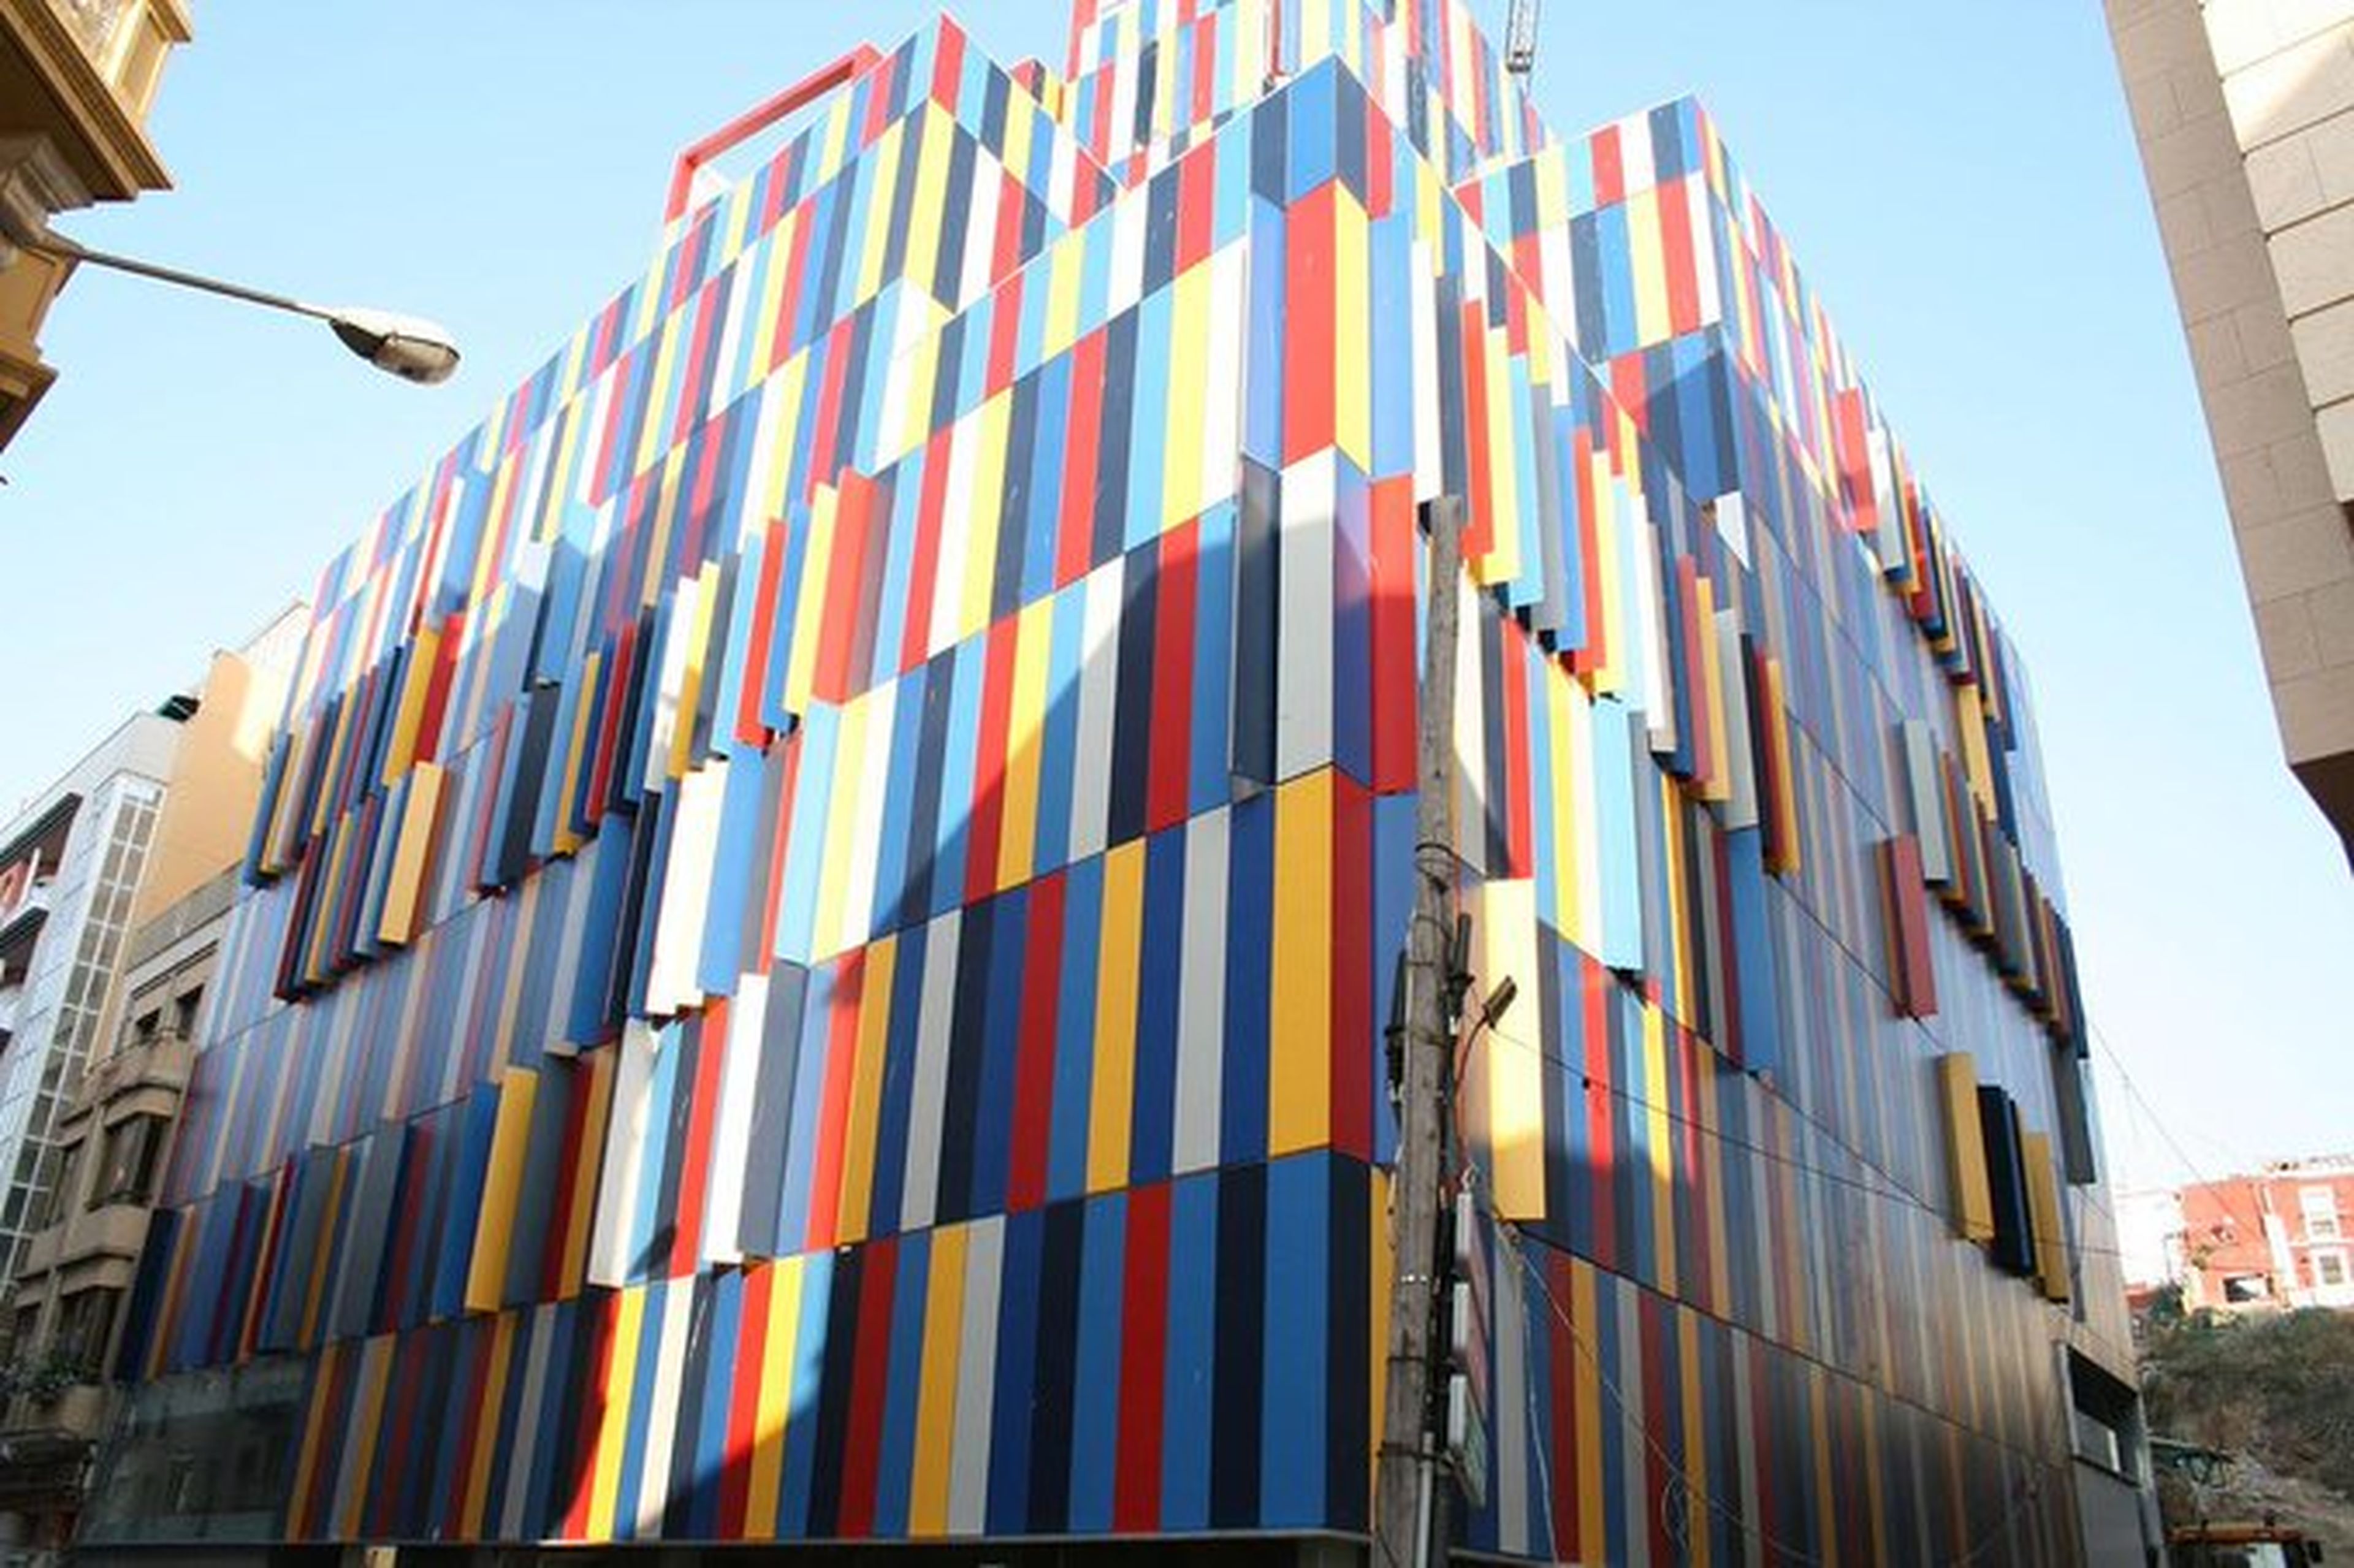 Edificio de Colores.